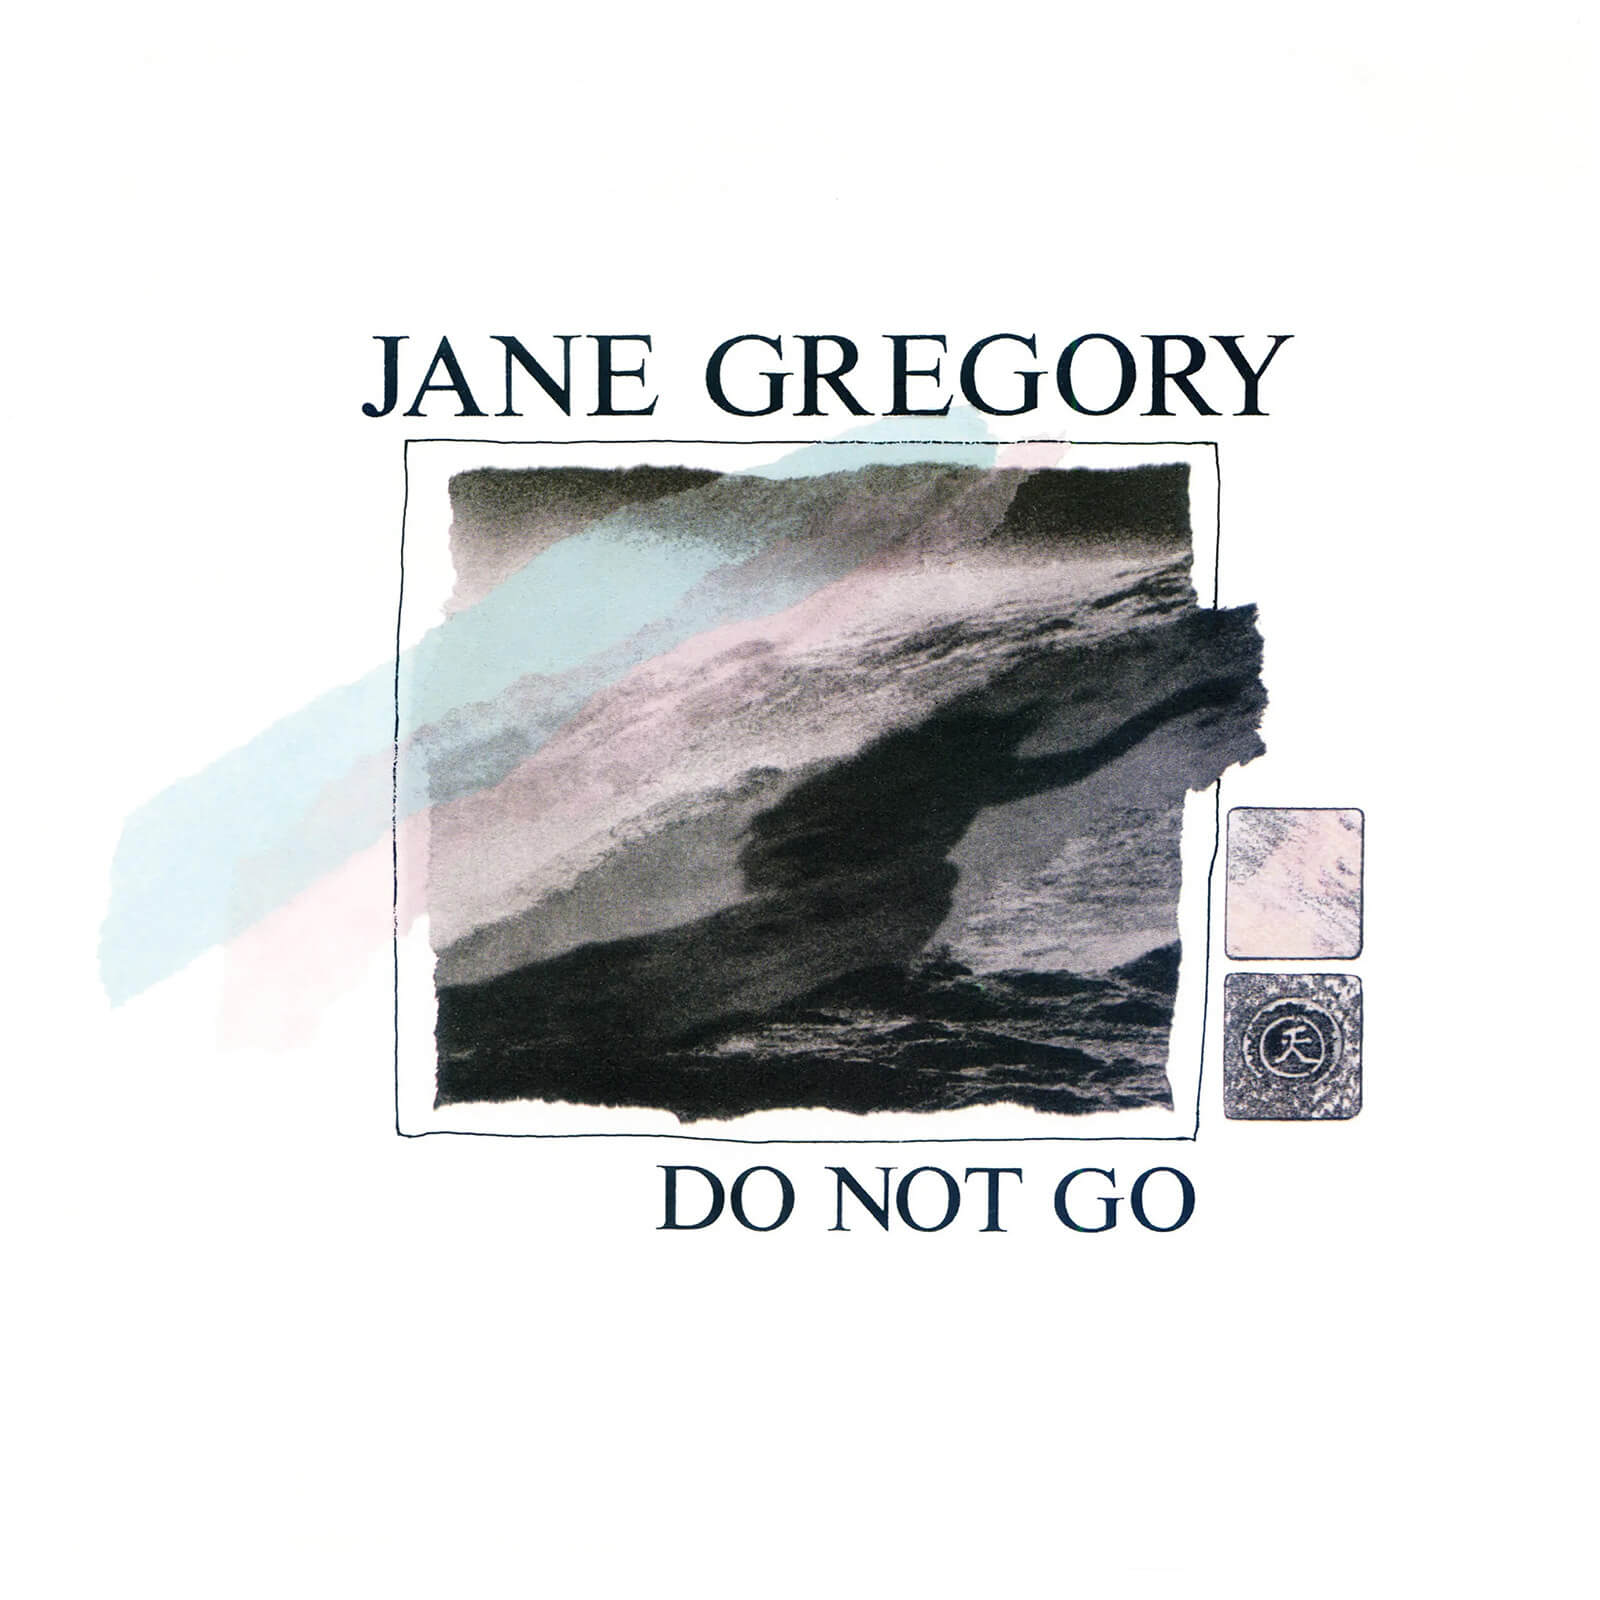 Jane Gregory - Do Not Go Vinyl